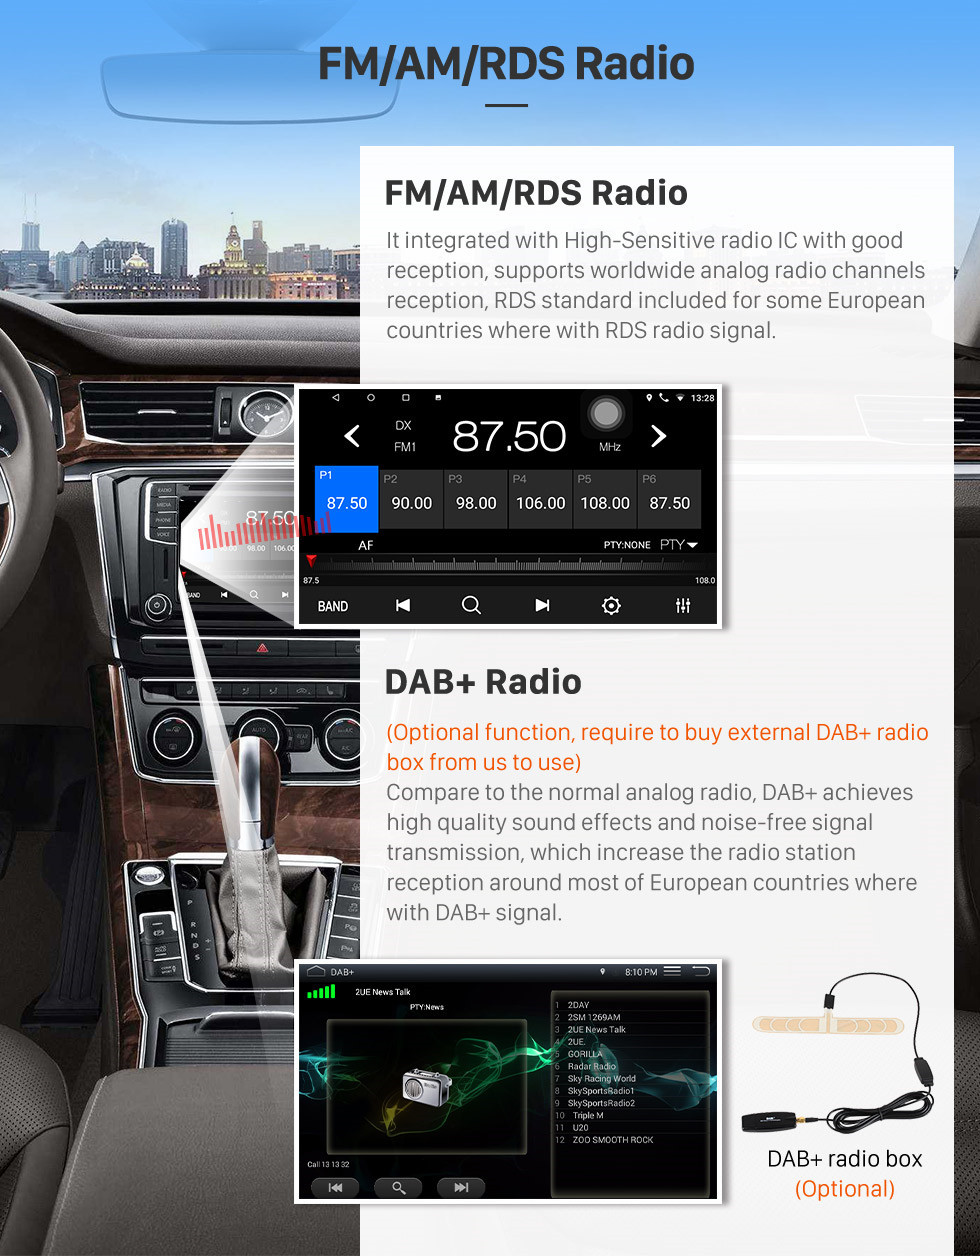 Seicane 10,1-дюймовый Android 13.0 2017 Toyota Corolla Правостороннее управление автомобилем Штатная магнитола HD Сенсорный экран Радио GPS-навигатор Поддержка 3G Wi-Fi Камера заднего вида Видео Carplay Bluetooth DVR OBD II